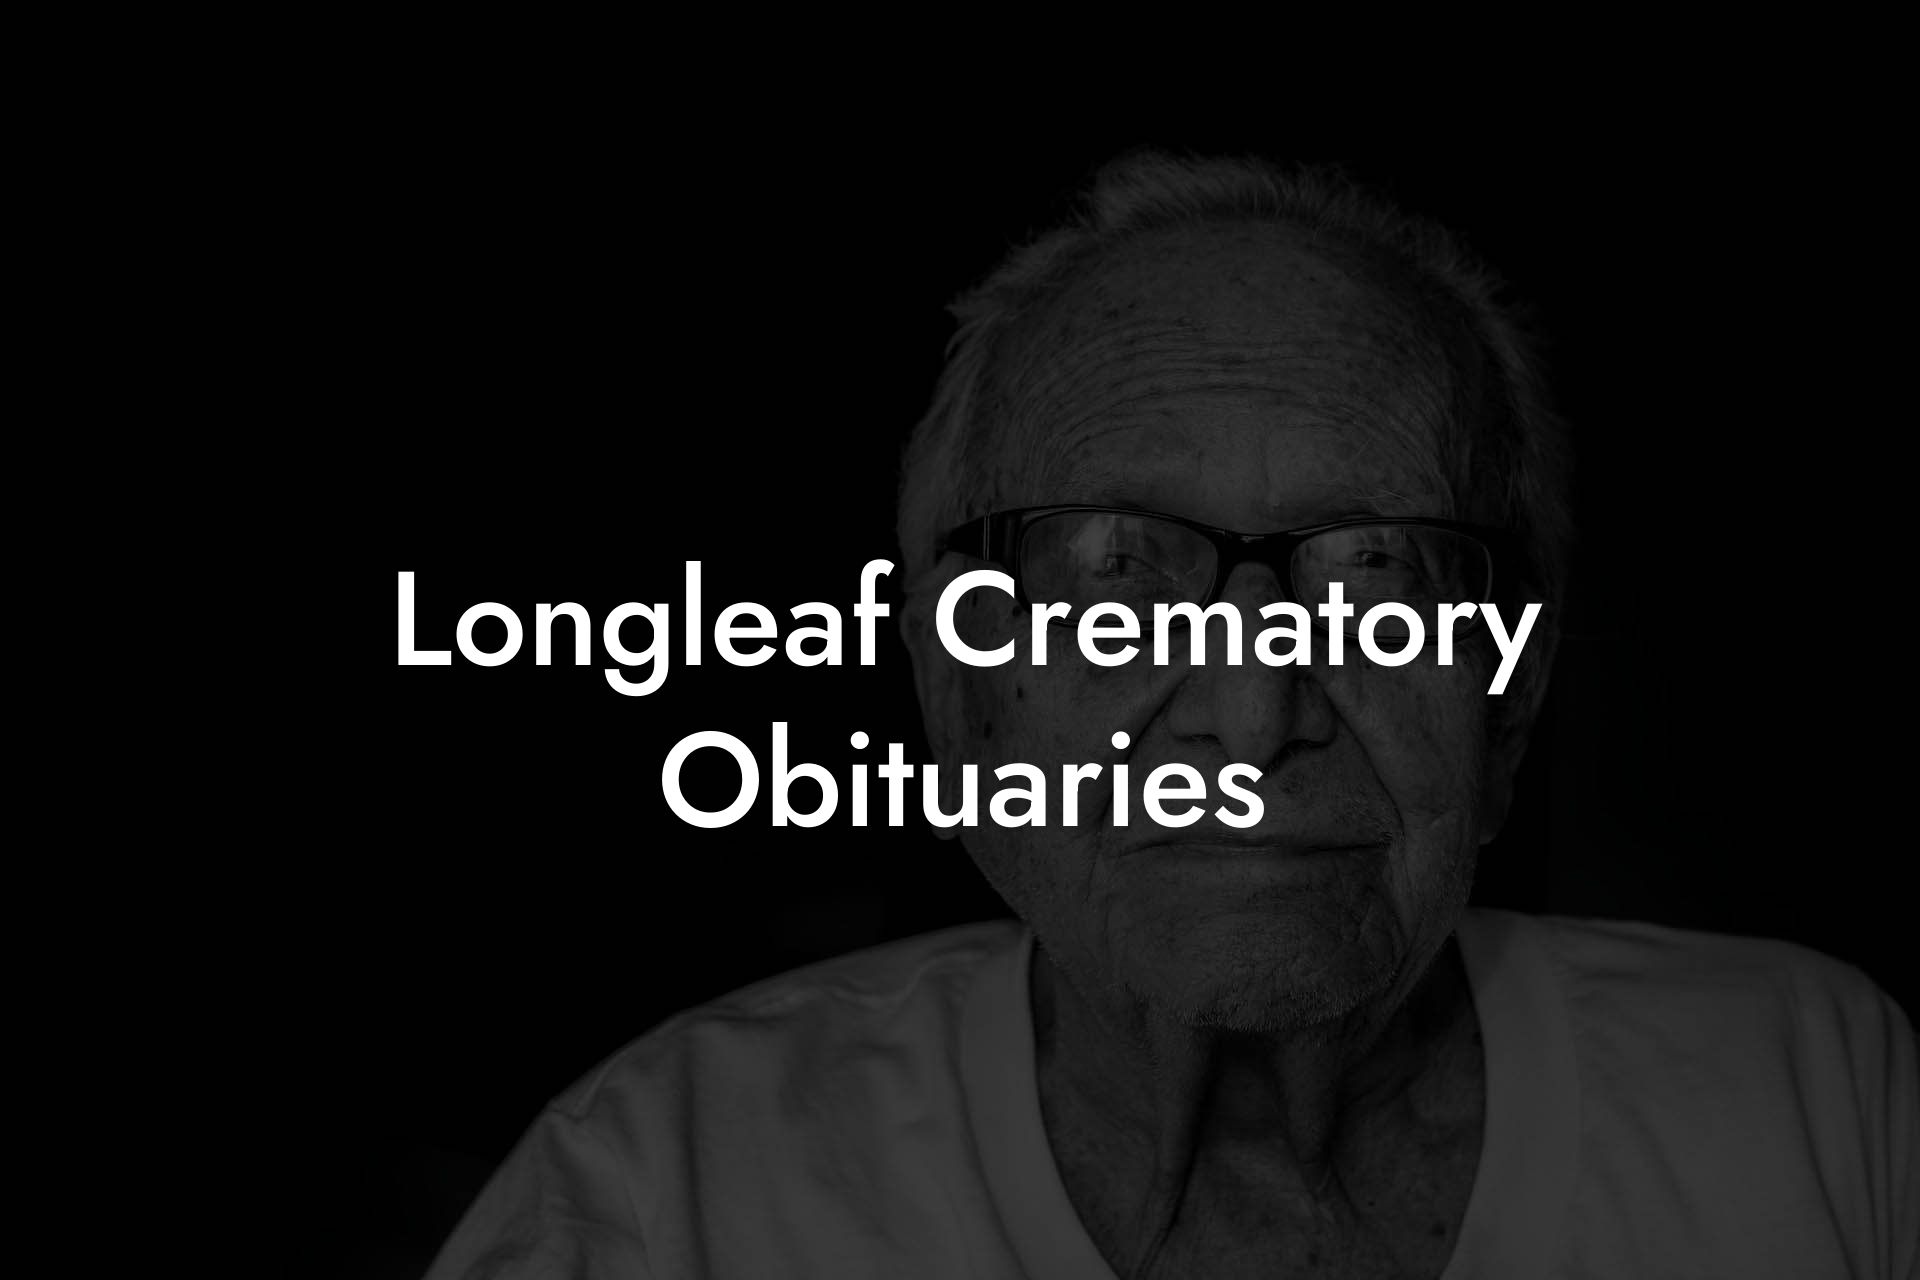 Longleaf Crematory Obituaries